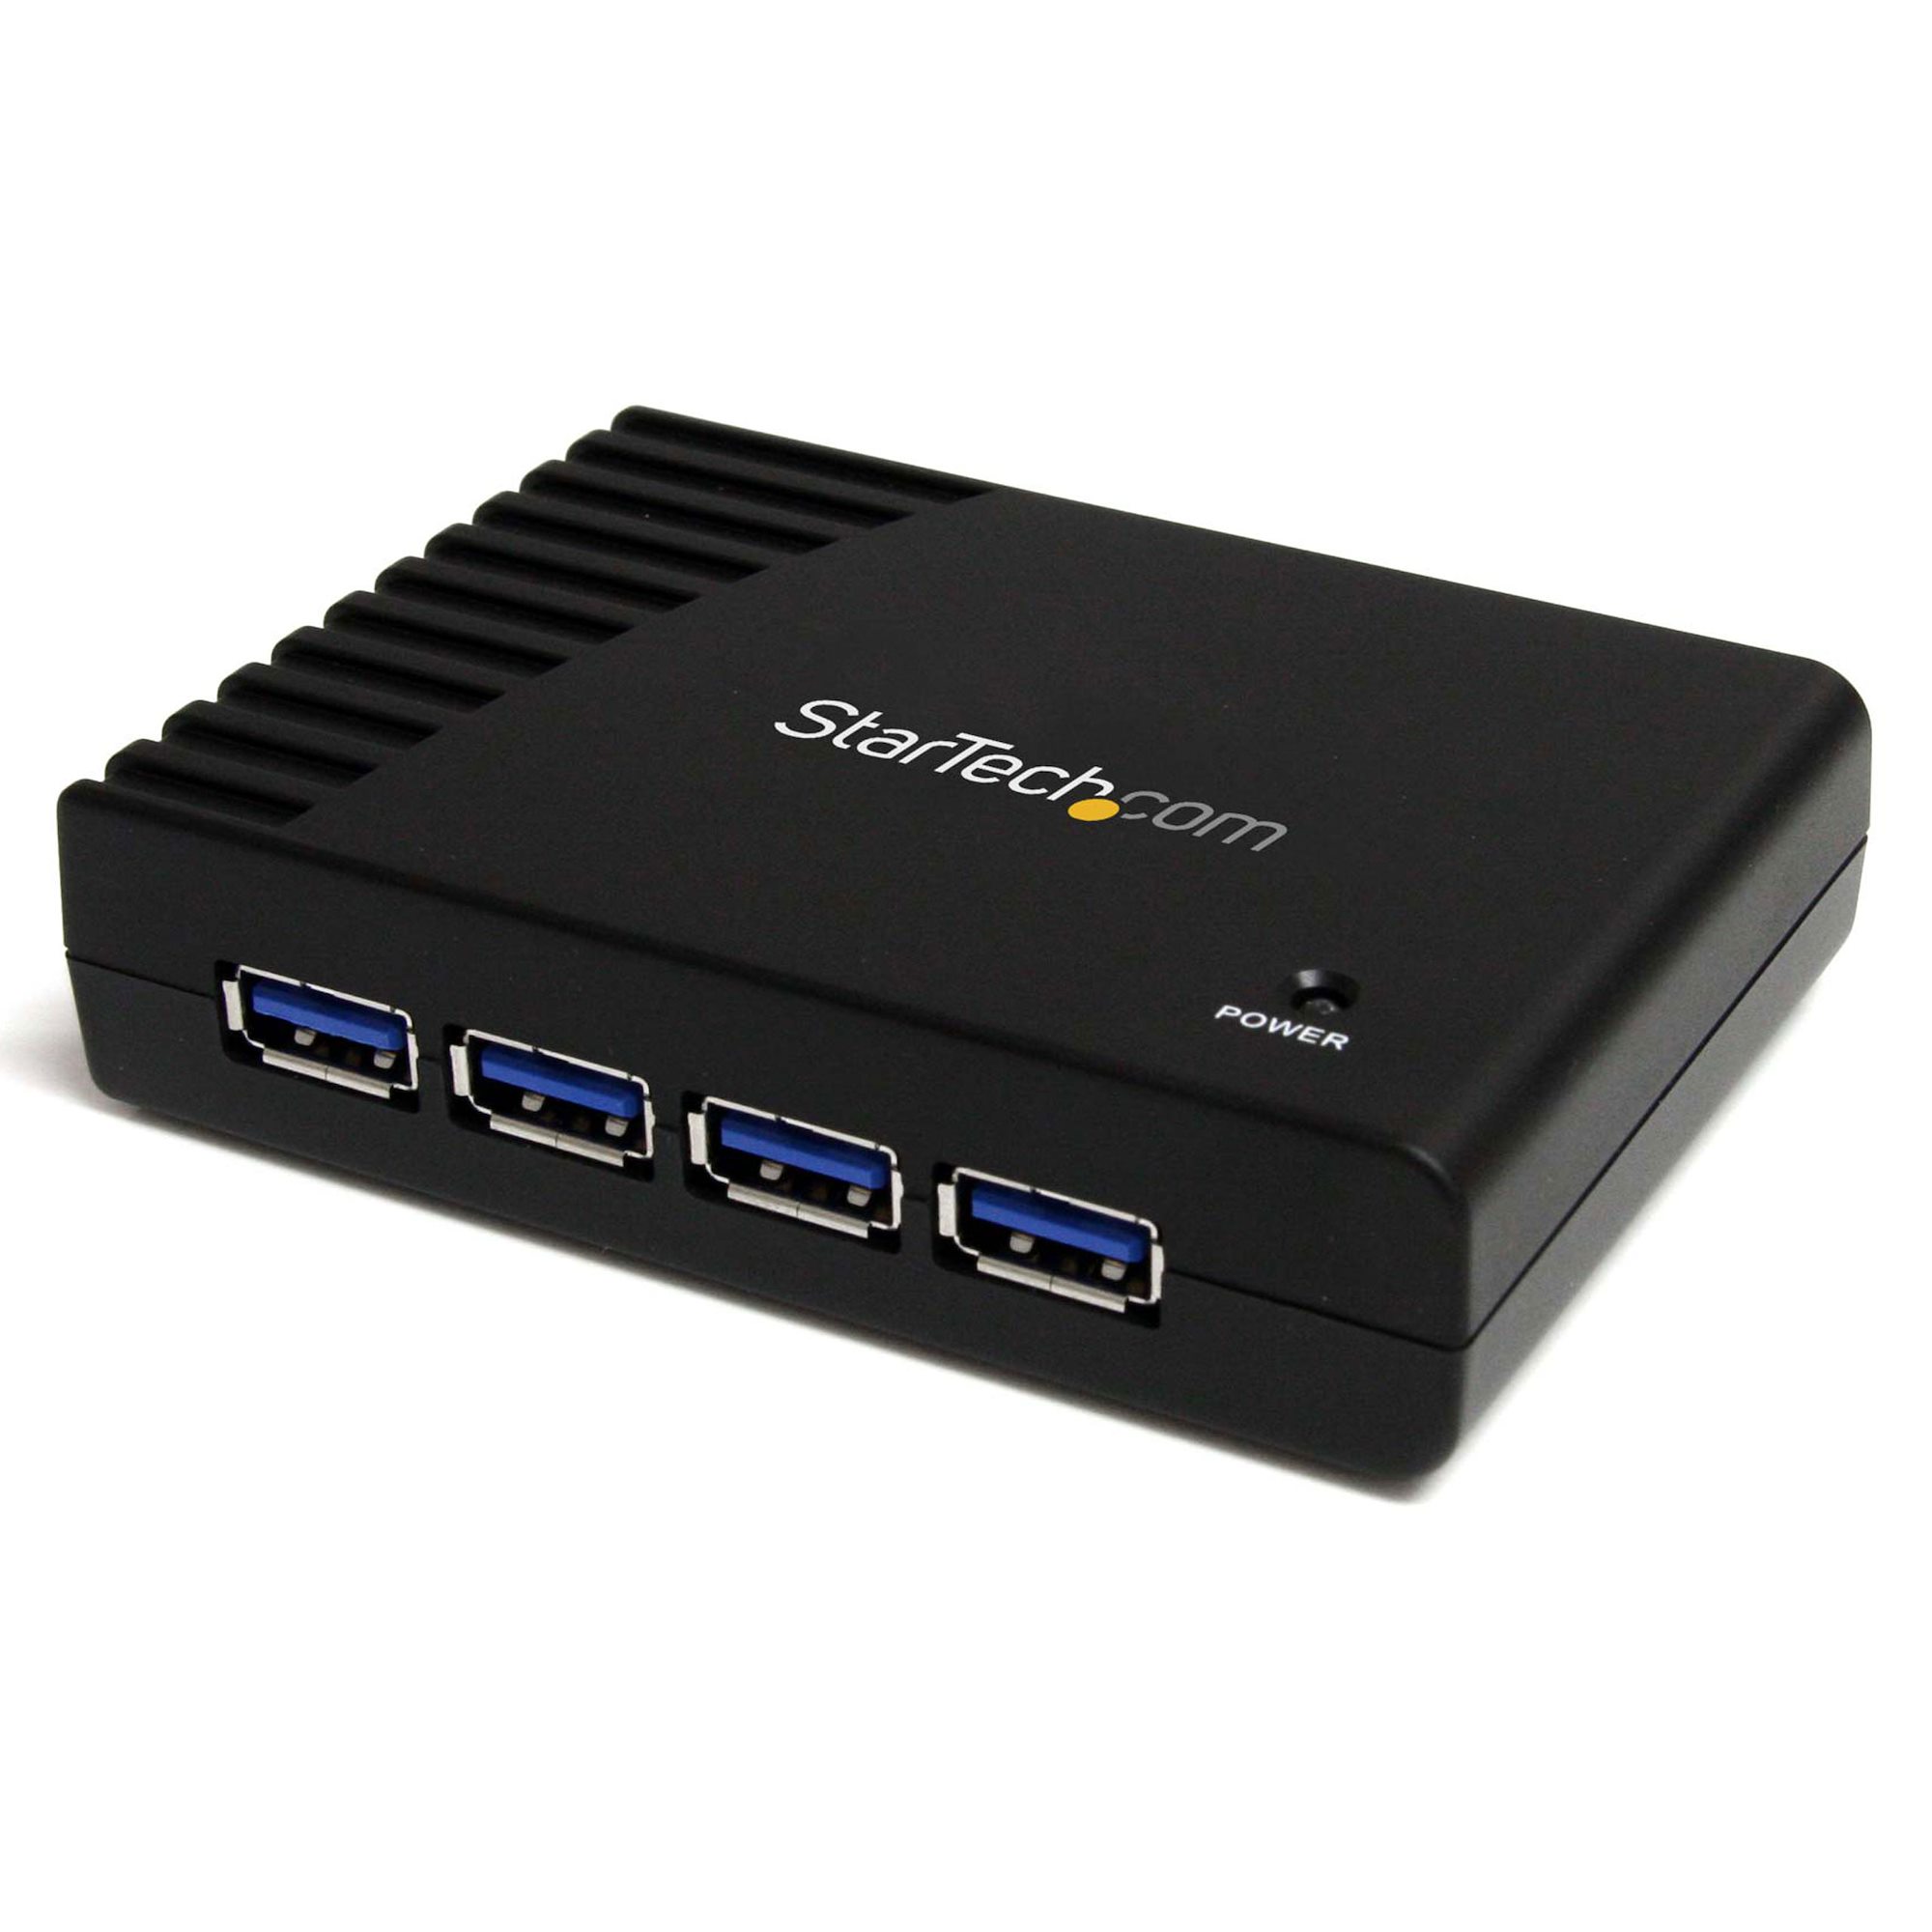 StarTech.com Hub USB 3.0 4 Ports, toute la bureautique informatique.